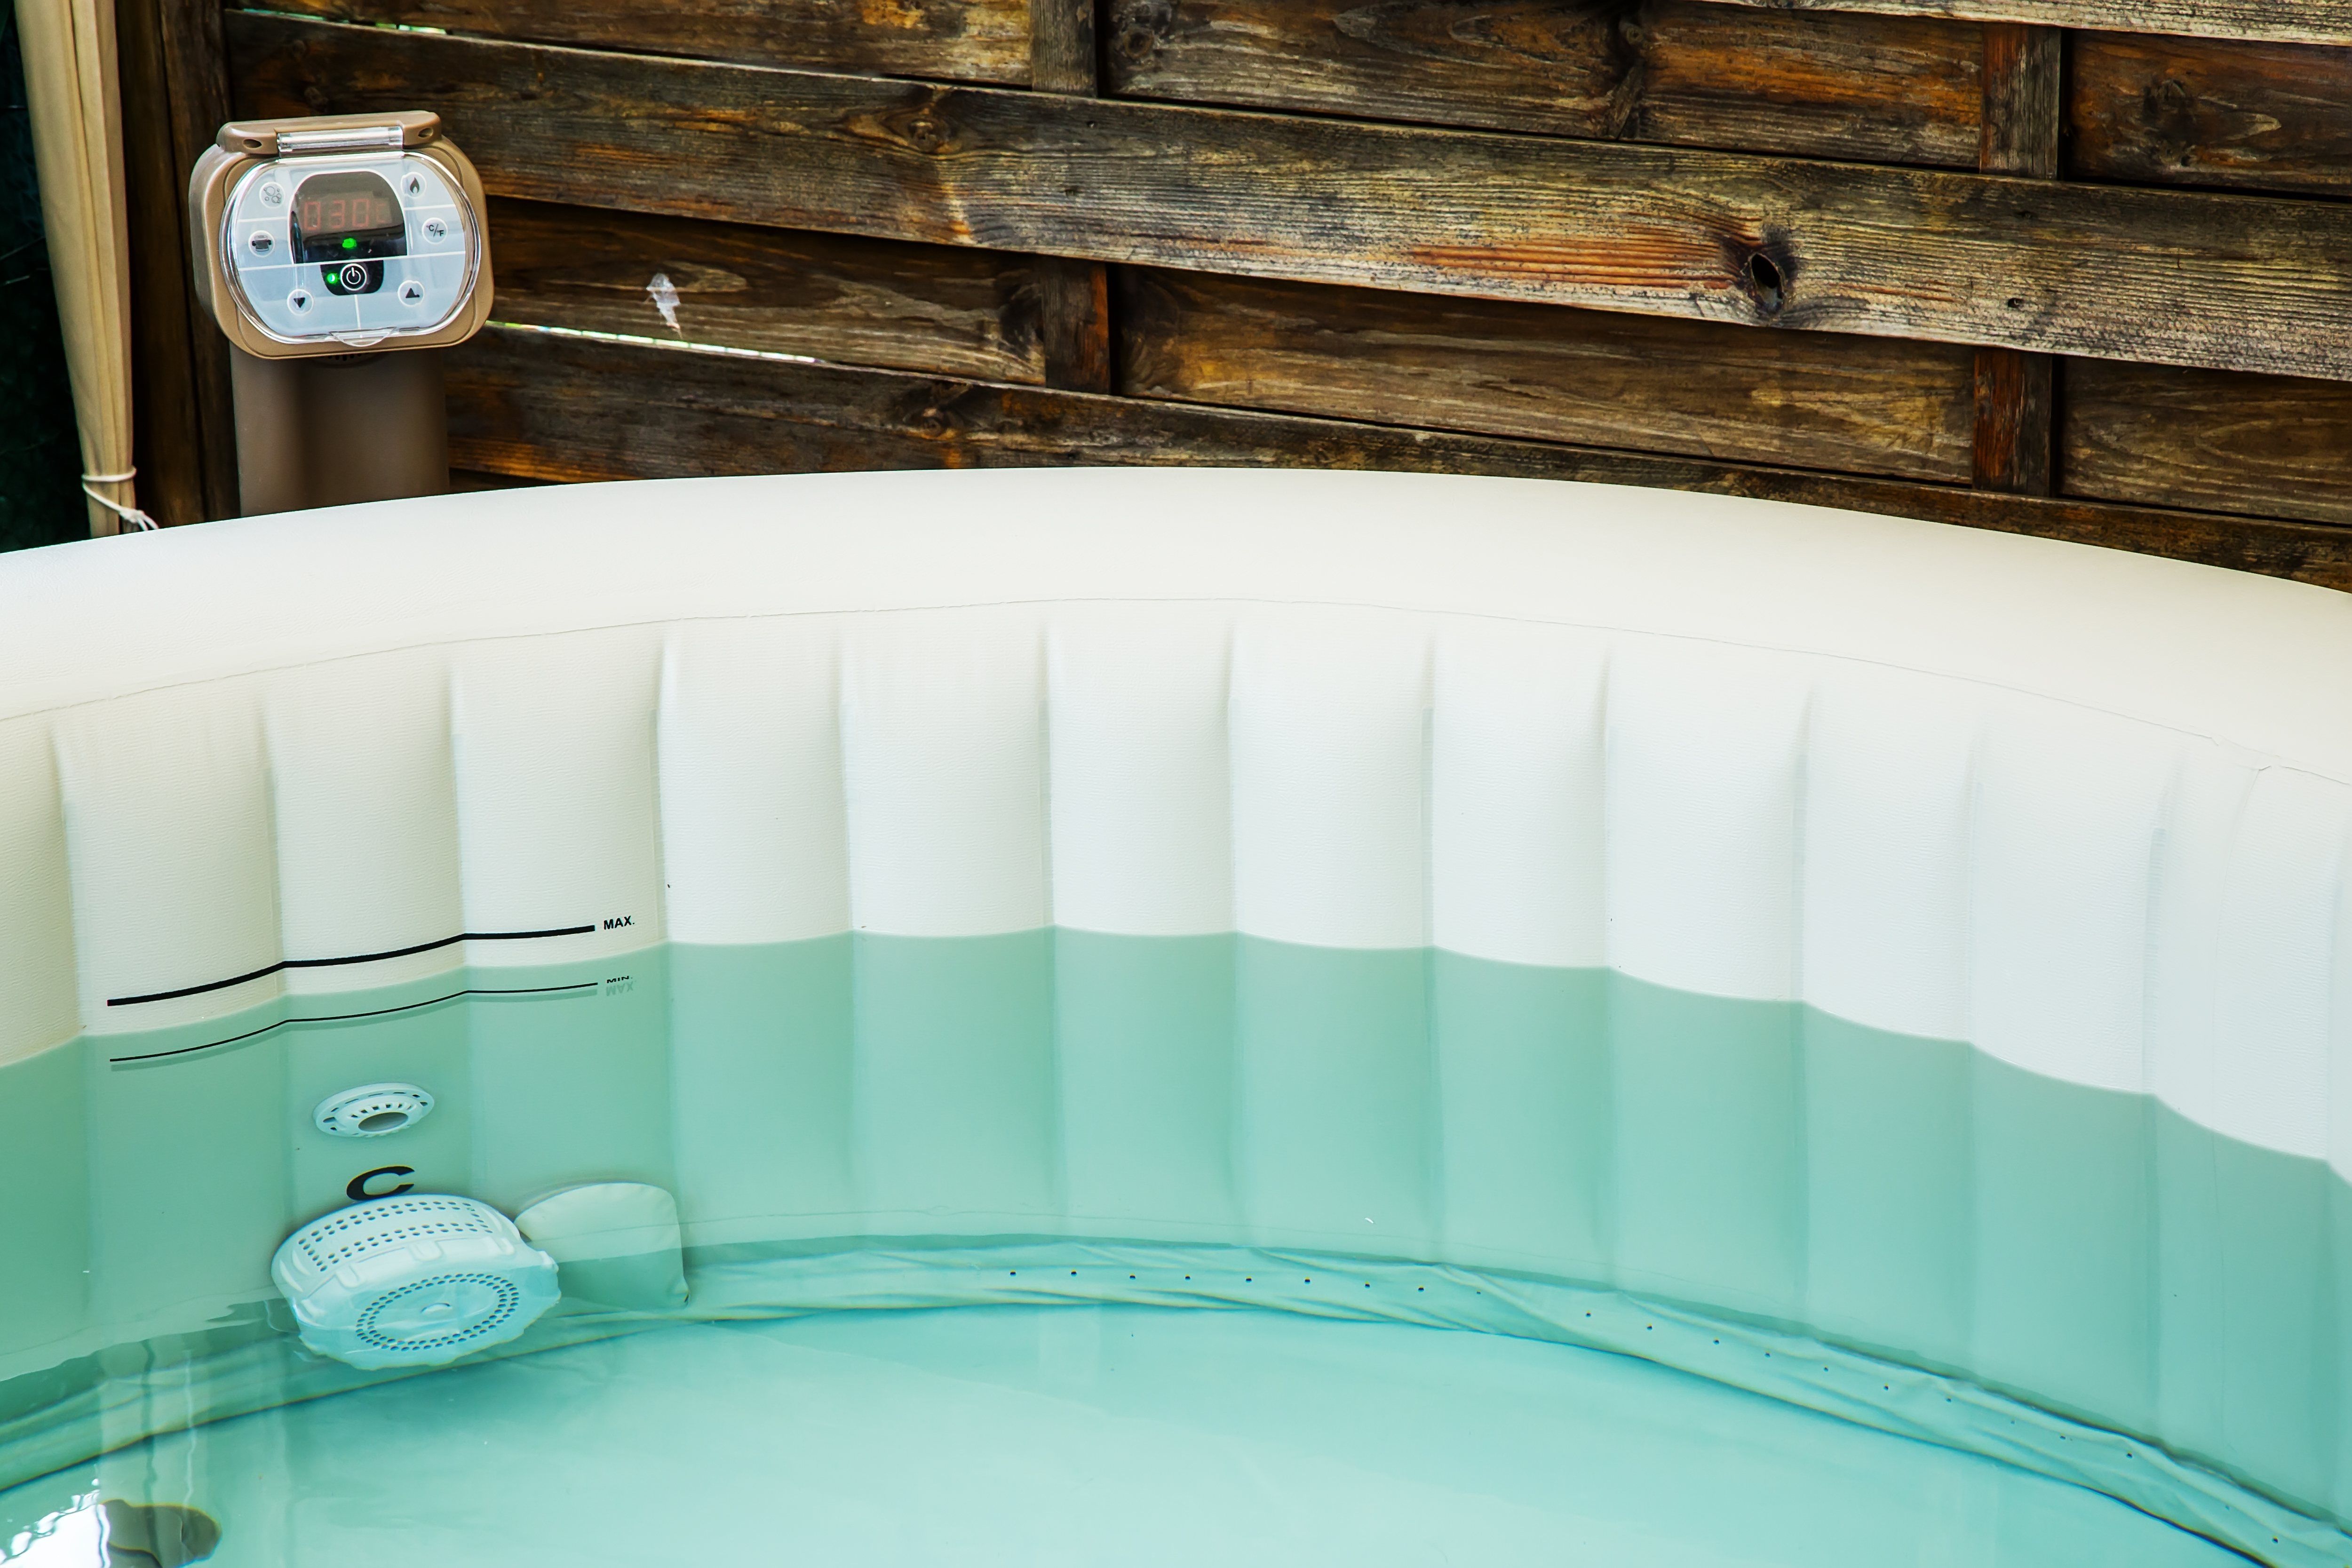 10 Motivos para comprar un spa hinchable - El Blog de